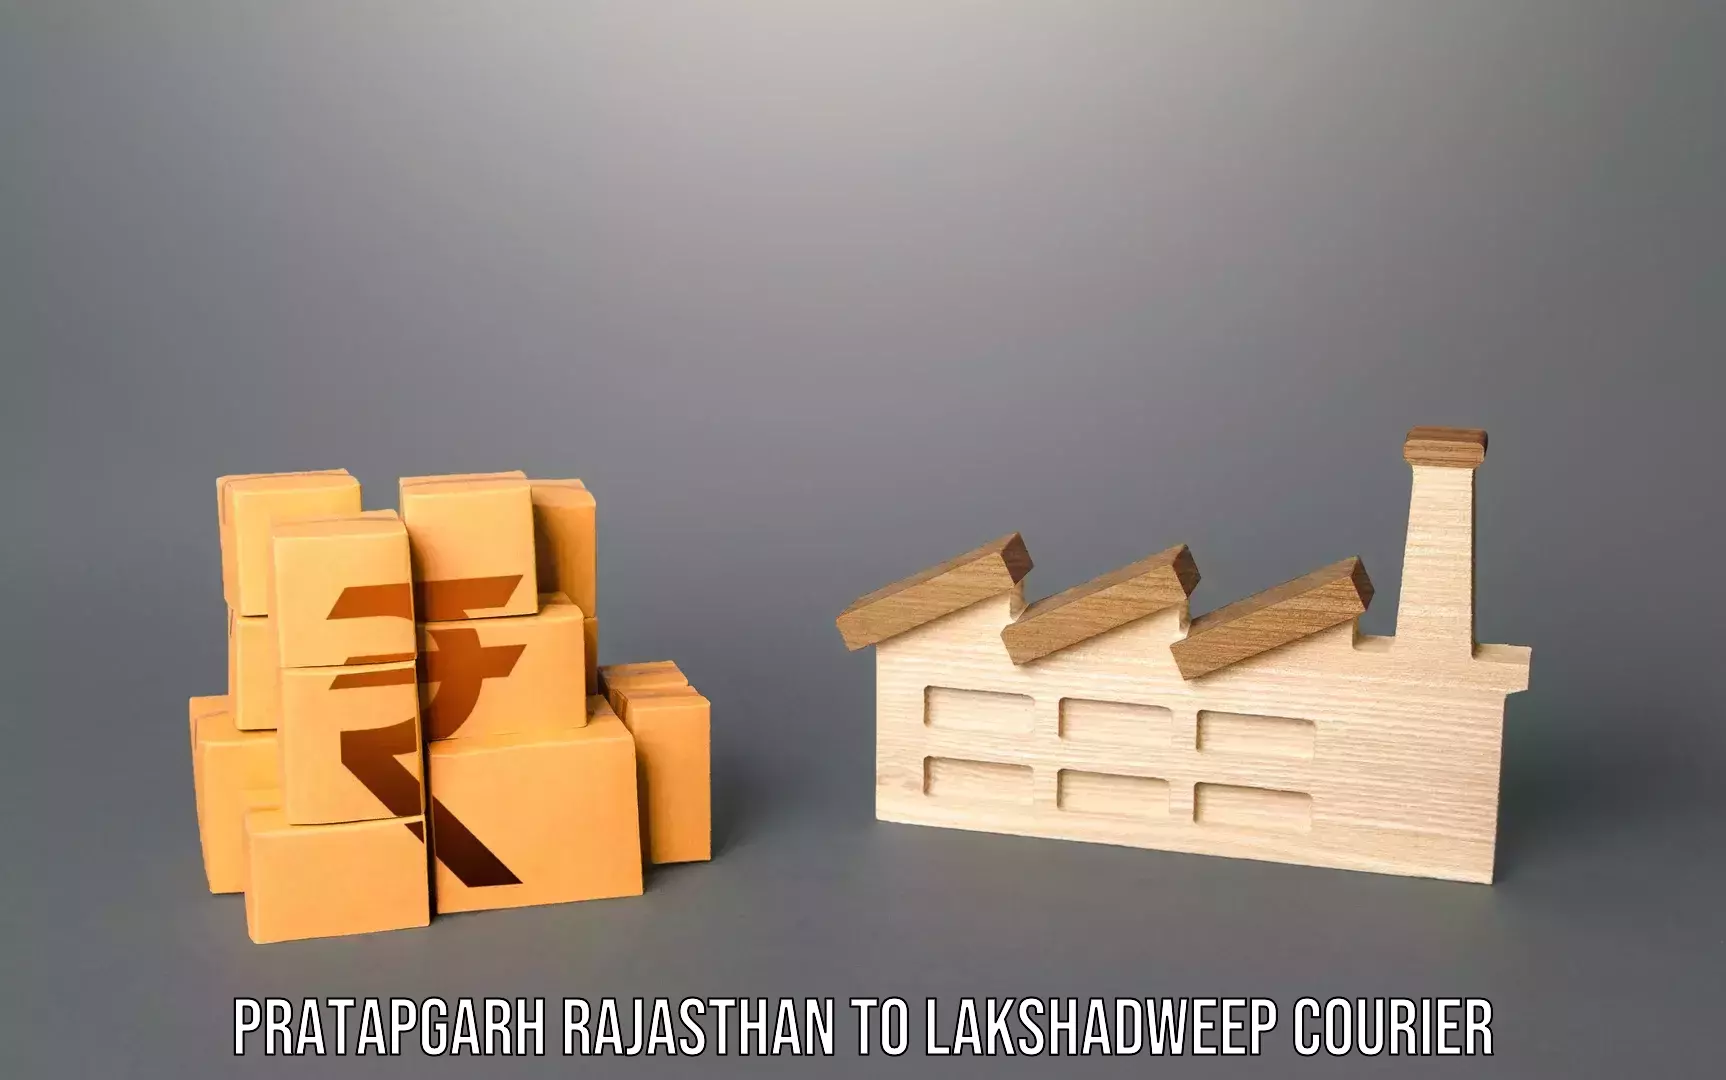 Baggage transport scheduler Pratapgarh Rajasthan to Lakshadweep